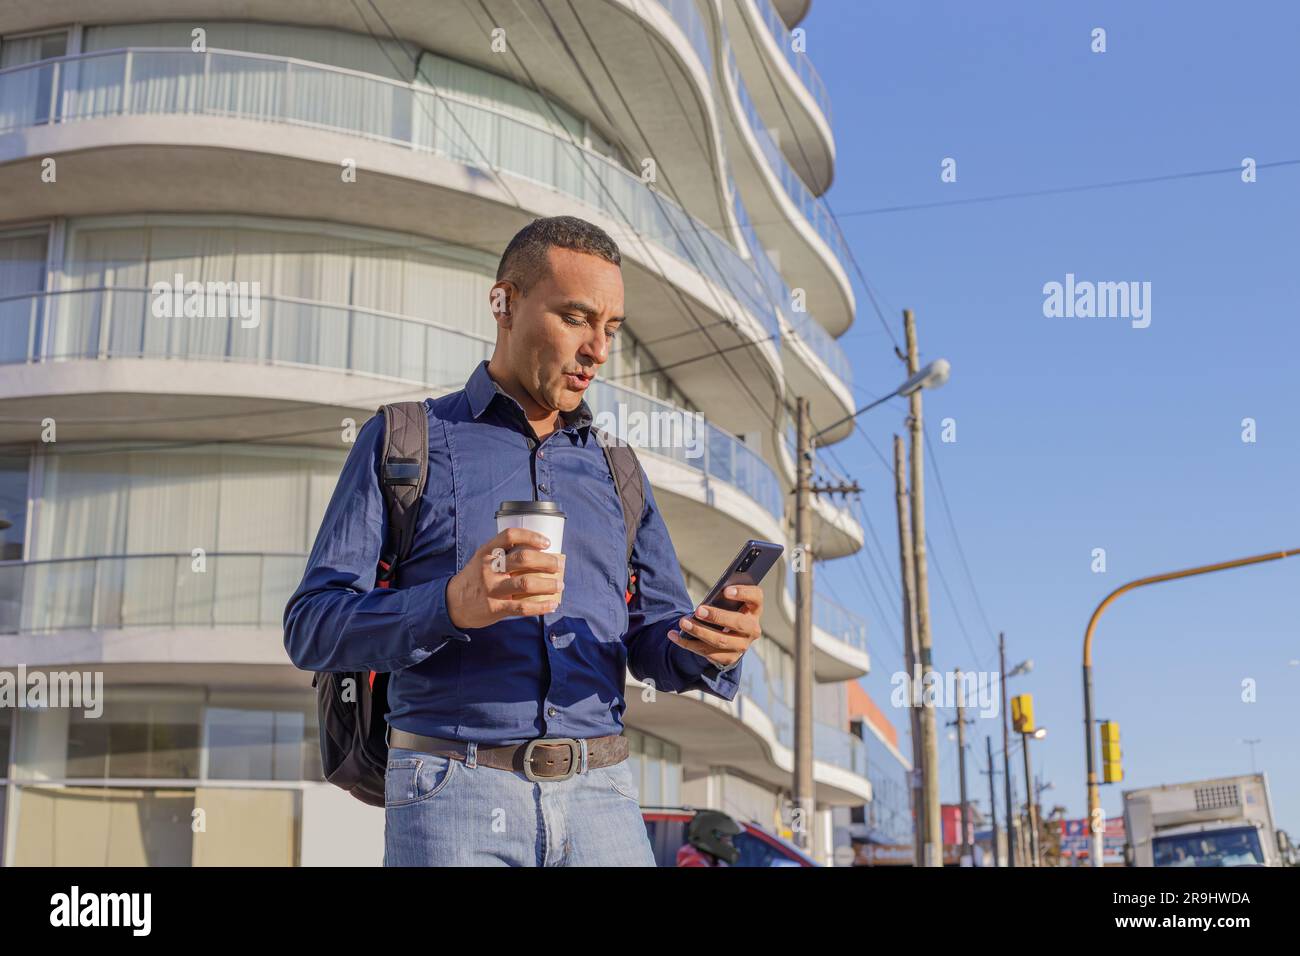 Joven latino mirando su teléfono móvil con cara sorprendida y con una taza de papel con café en la mano. Foto de stock